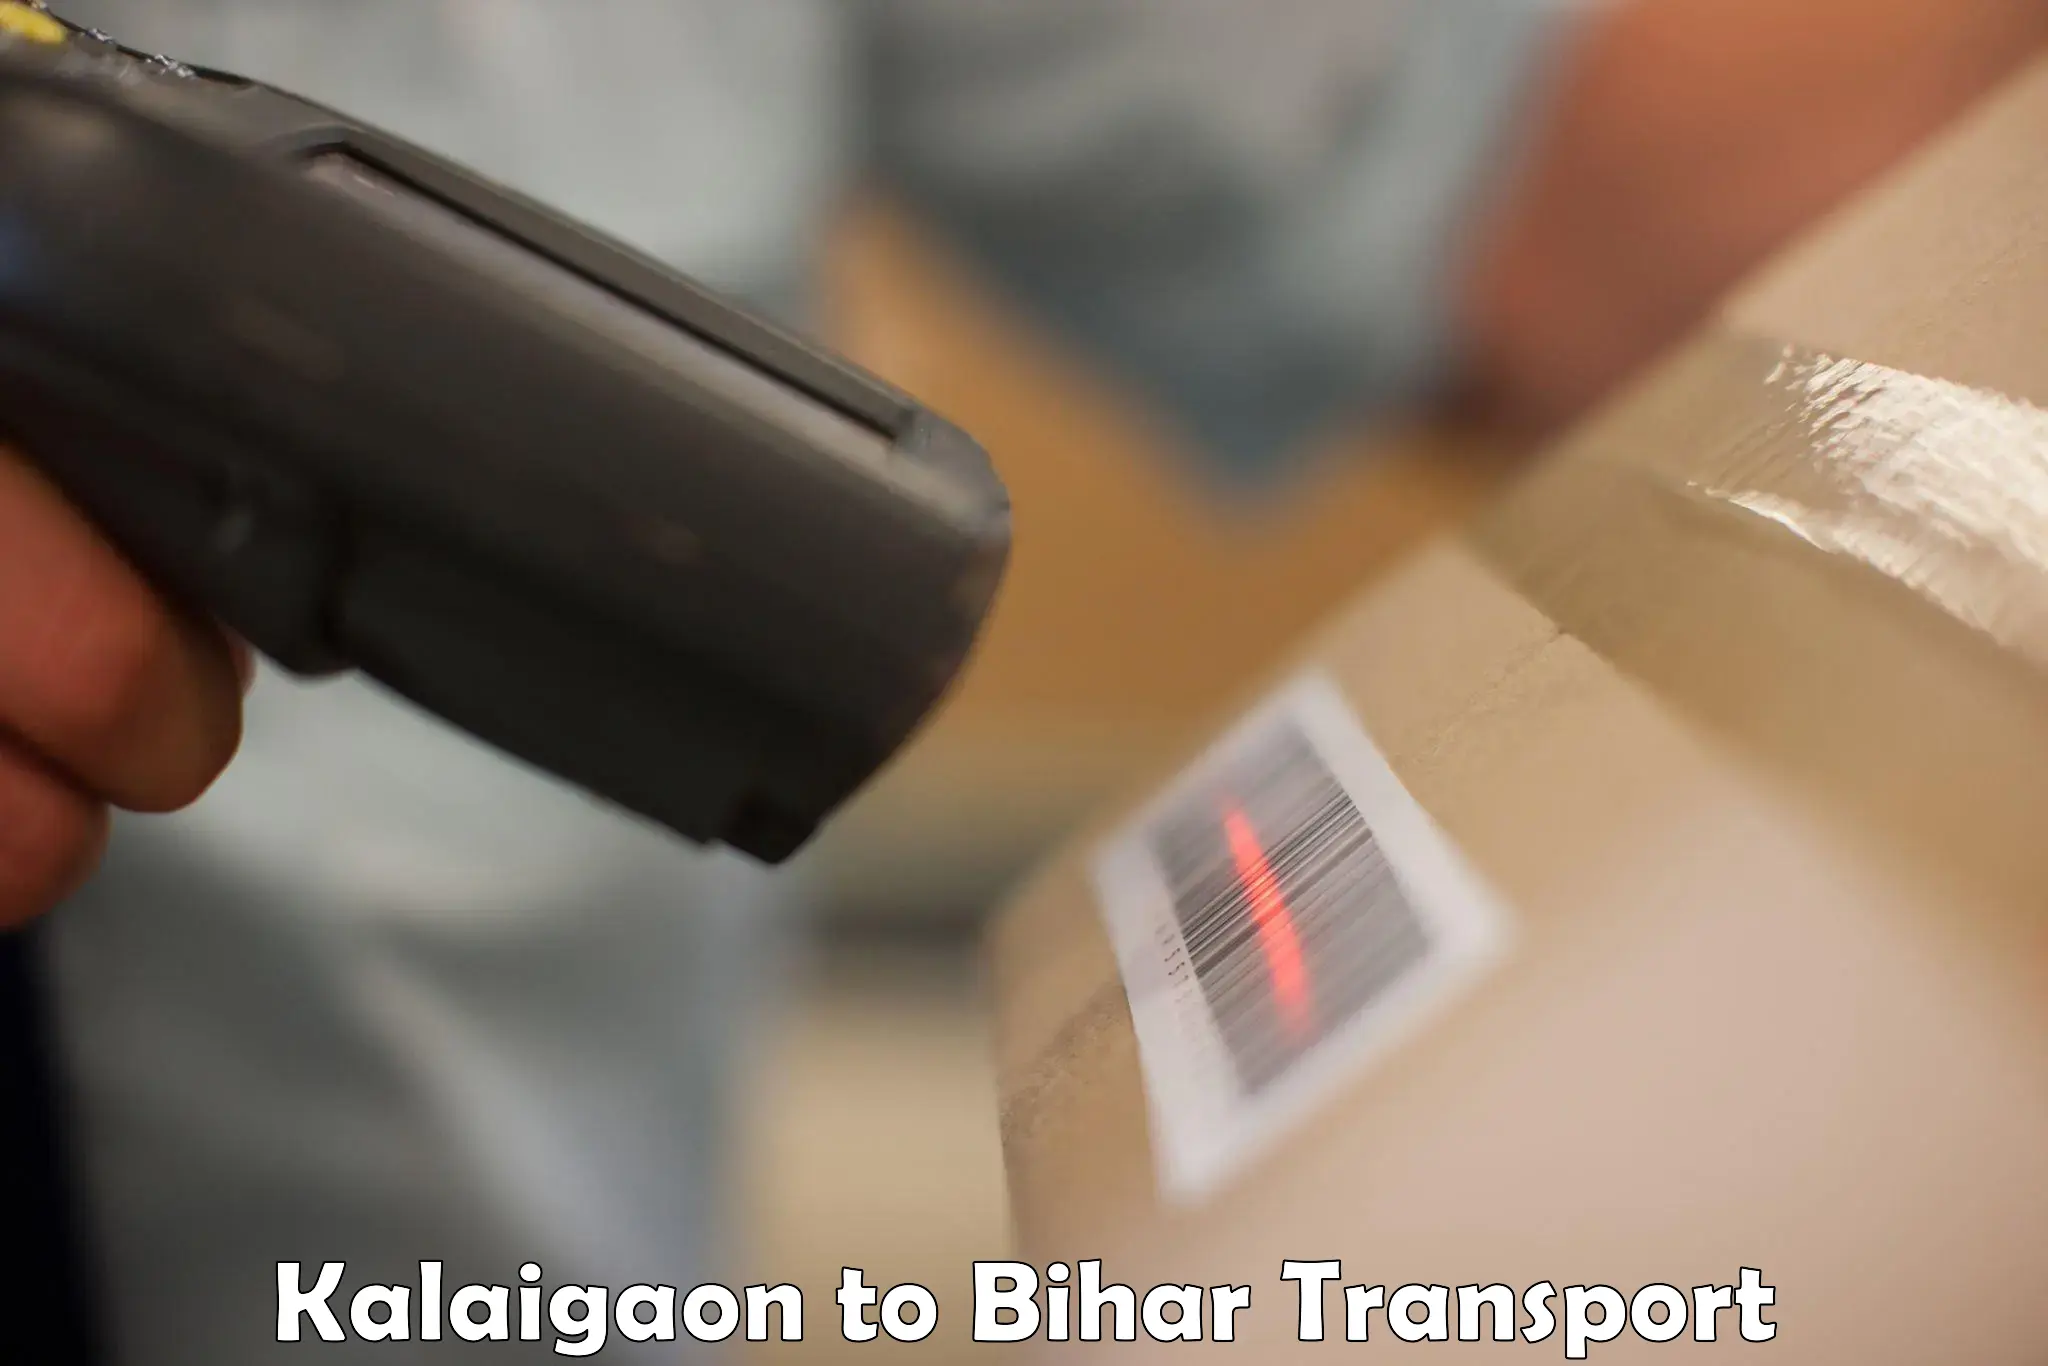 Air freight transport services Kalaigaon to Bihar